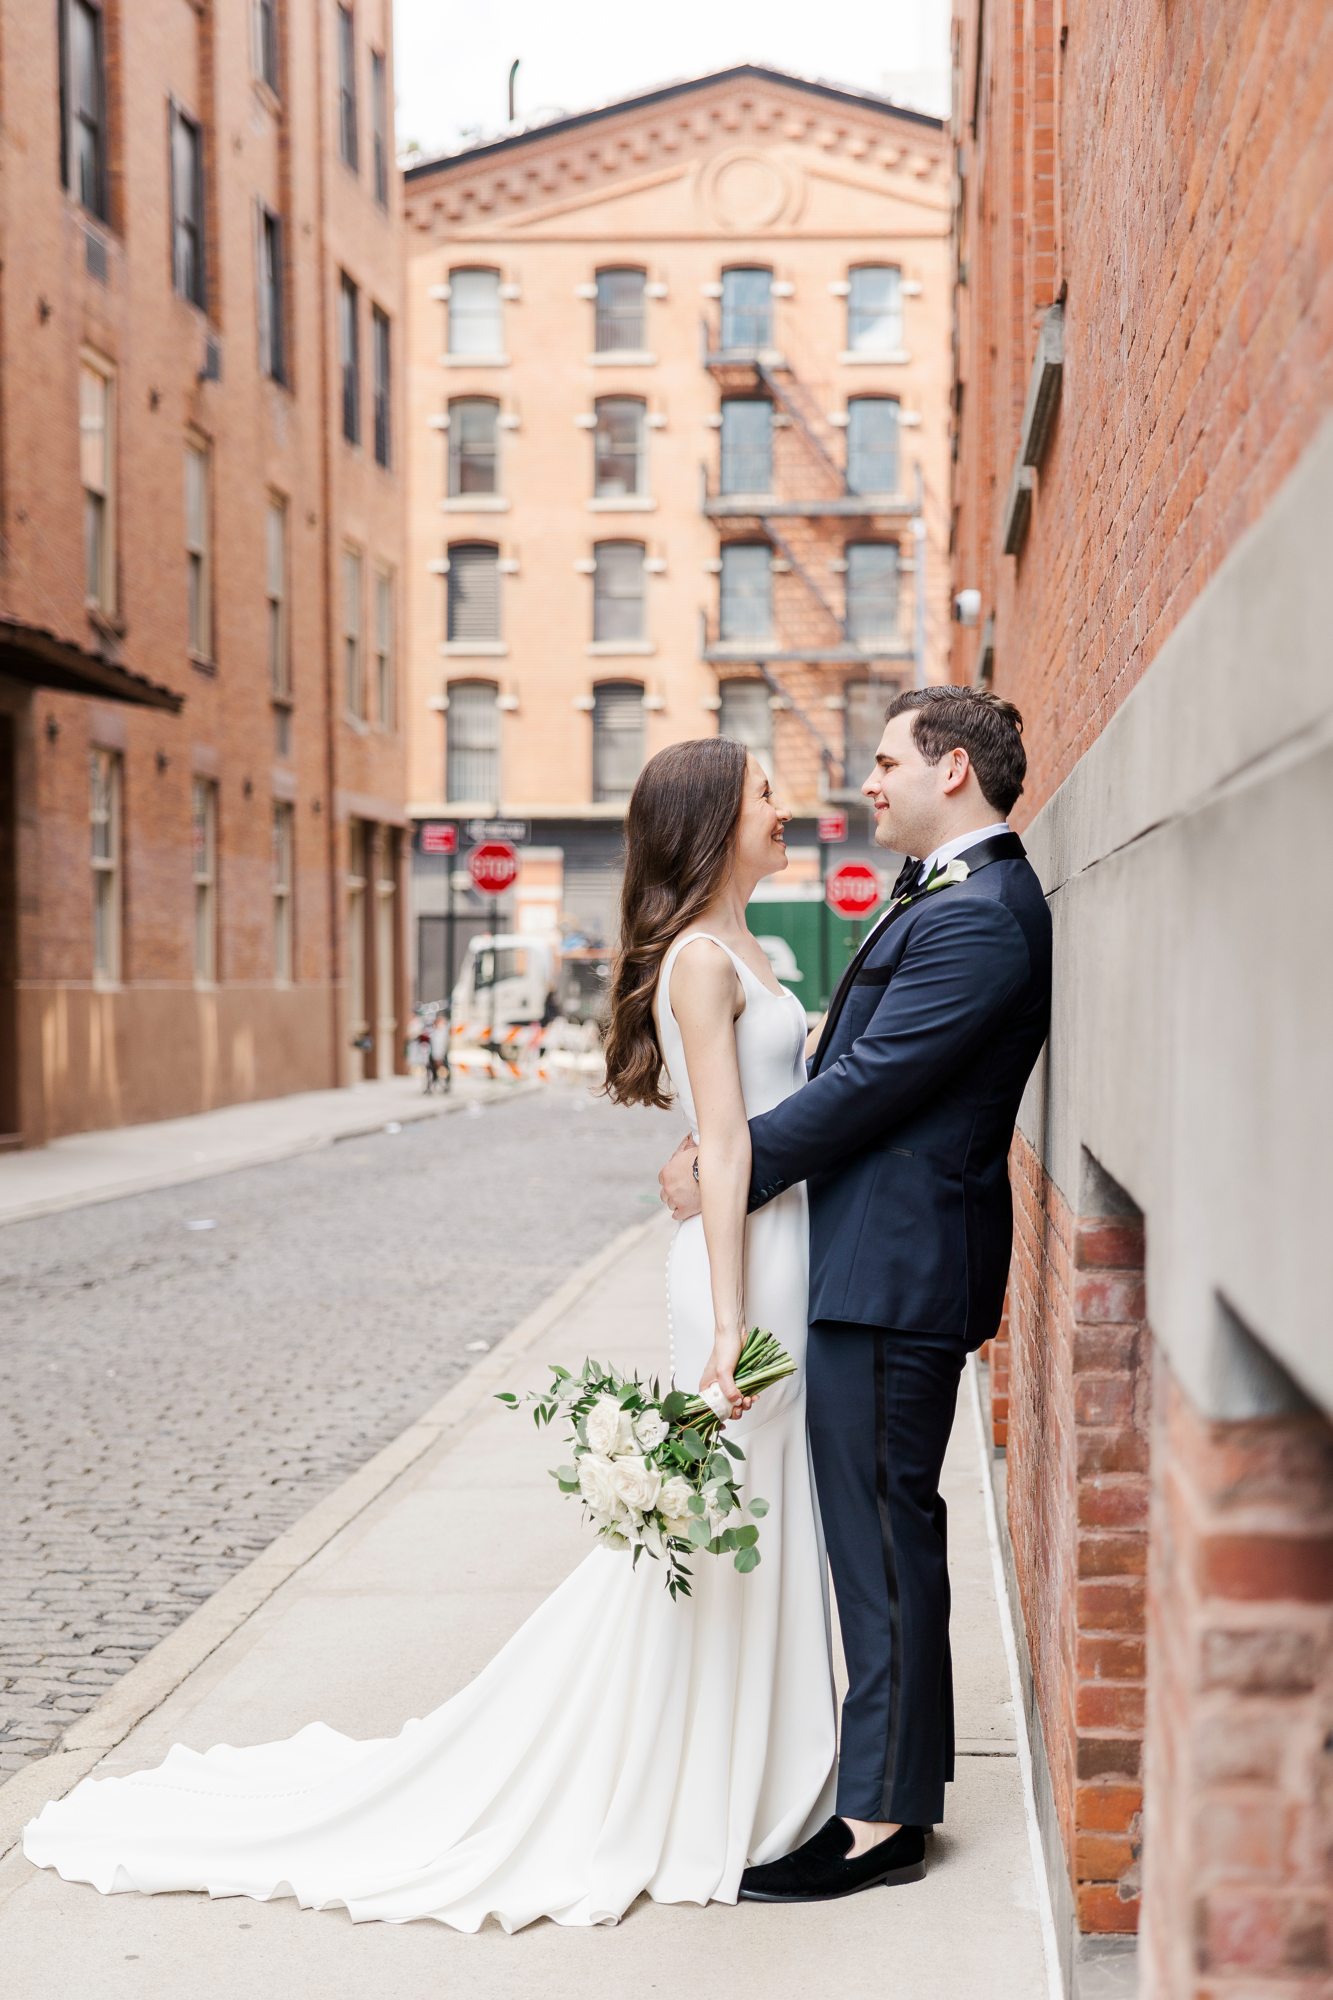 Joyful Tribeca Rooftop Wedding Photography, NYC